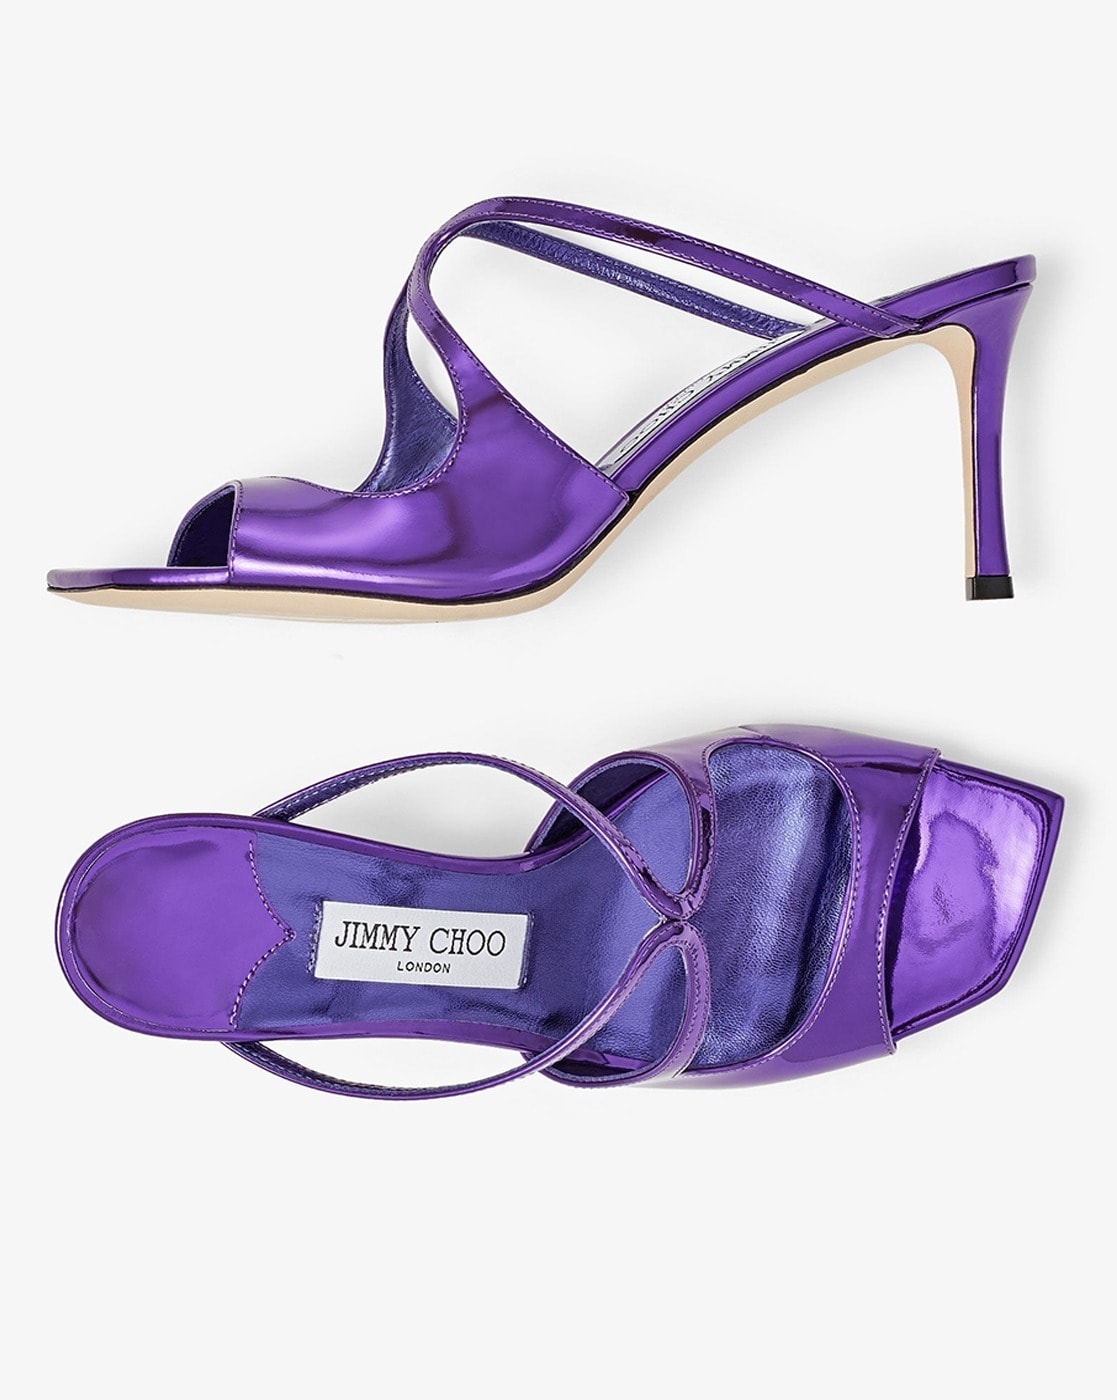 Saeda 100 embellished PVC sandals in purple - Jimmy Choo | Mytheresa |  Fashion shoes, Jimmy choo, Jimmy choo shoes